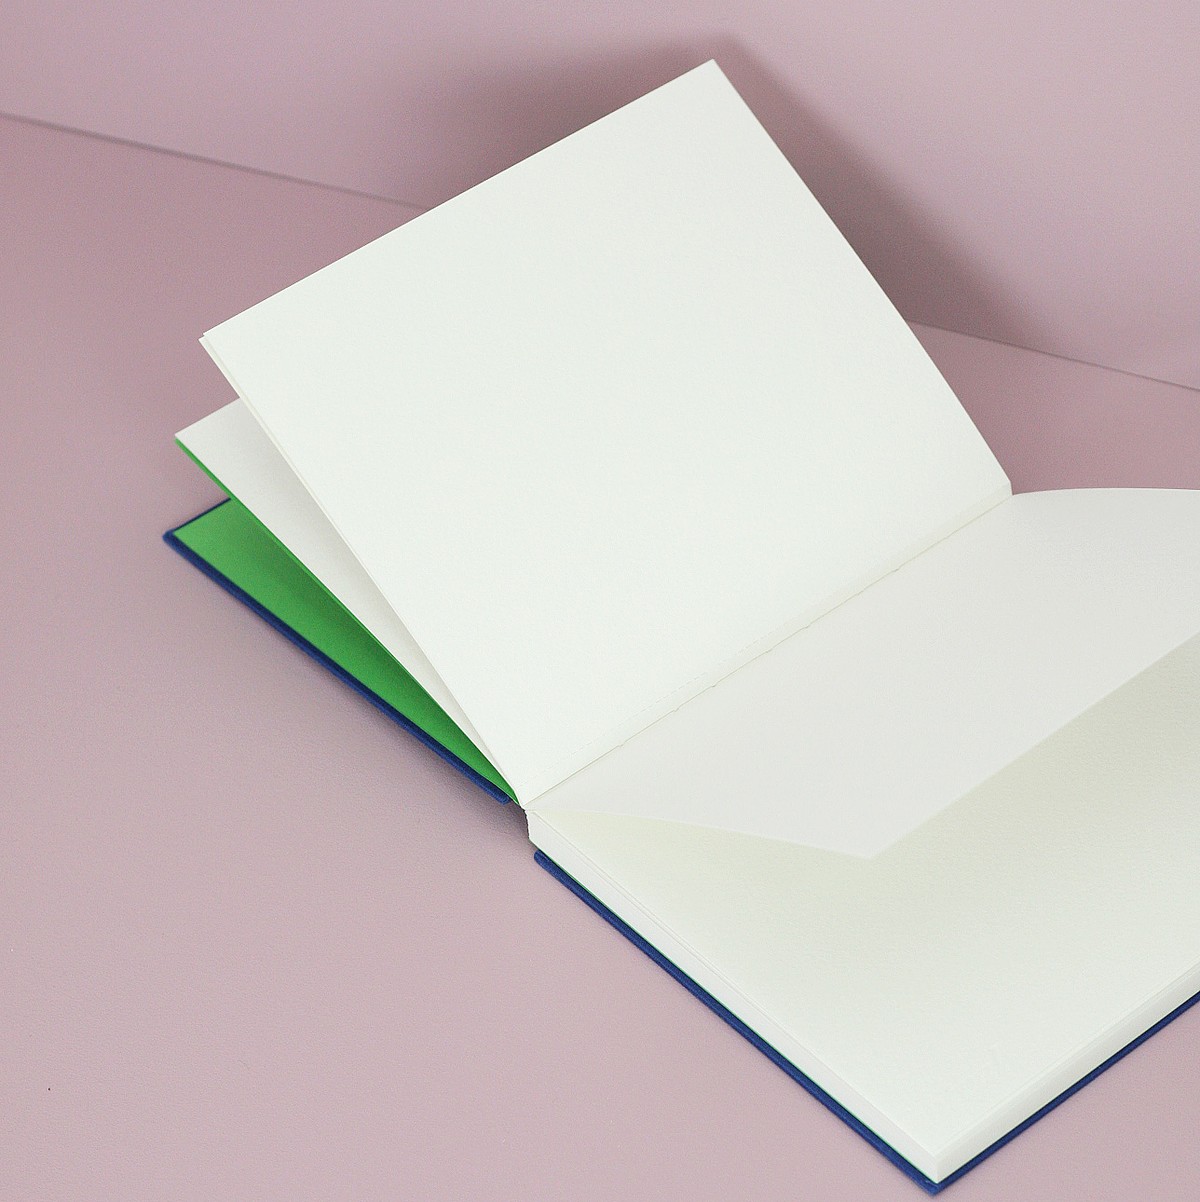 Reinvente a si mesmo — série caderno de esboço de aquarelas para